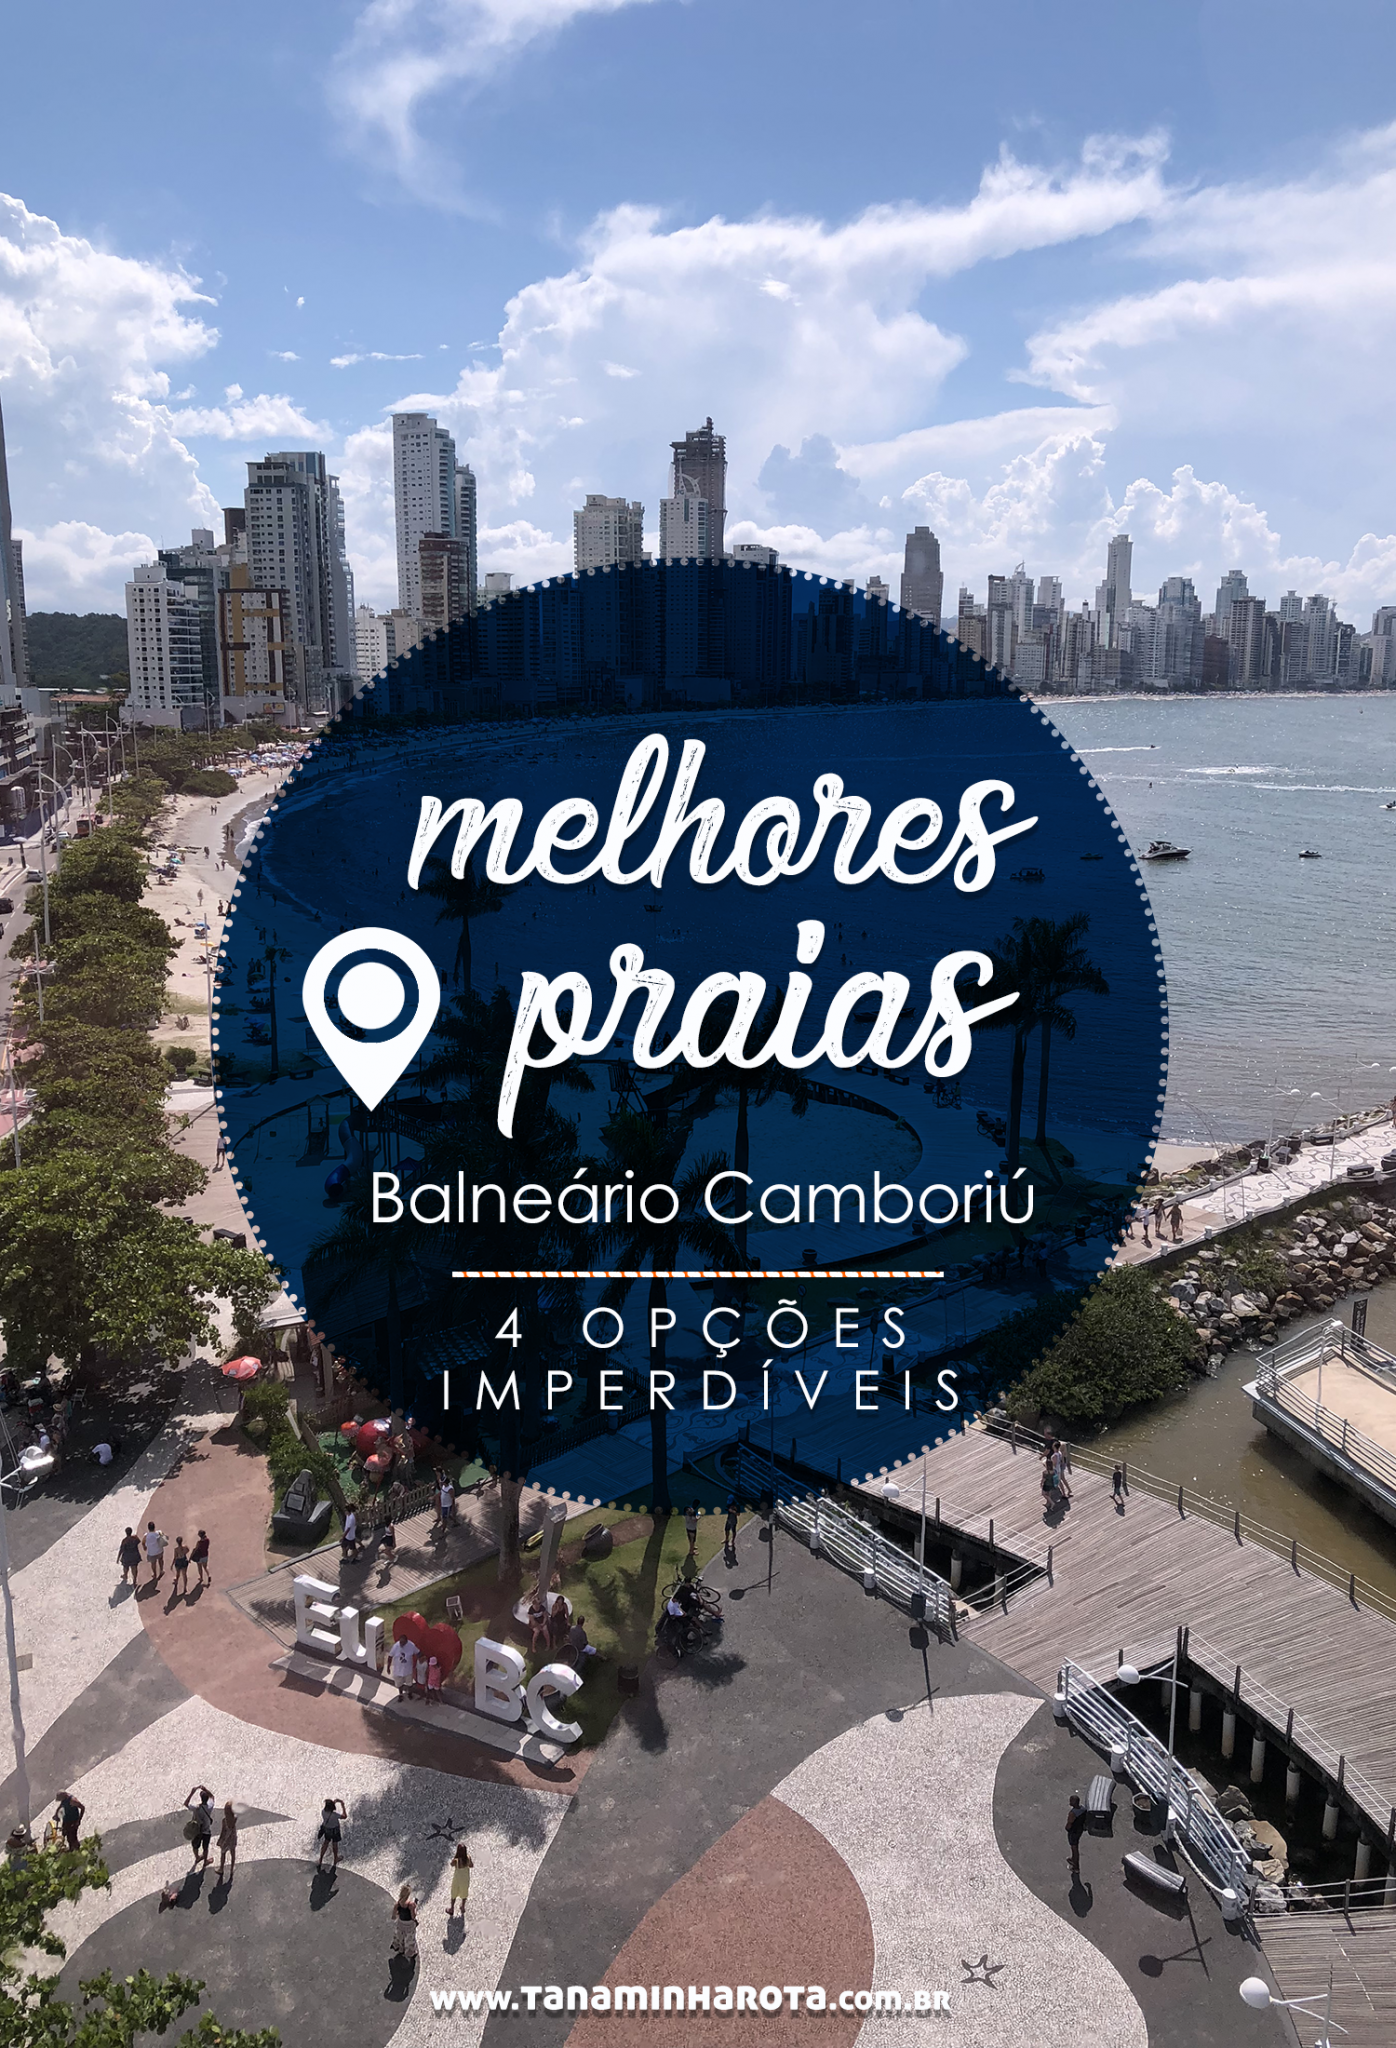 Descubra as melhores praias de Balenário Camboriú nesse post! Dicas de 4 opções imperdíveis para aproveitar a cidade! #balneariocamboriu #santacatarina #praia #viagem #brasil